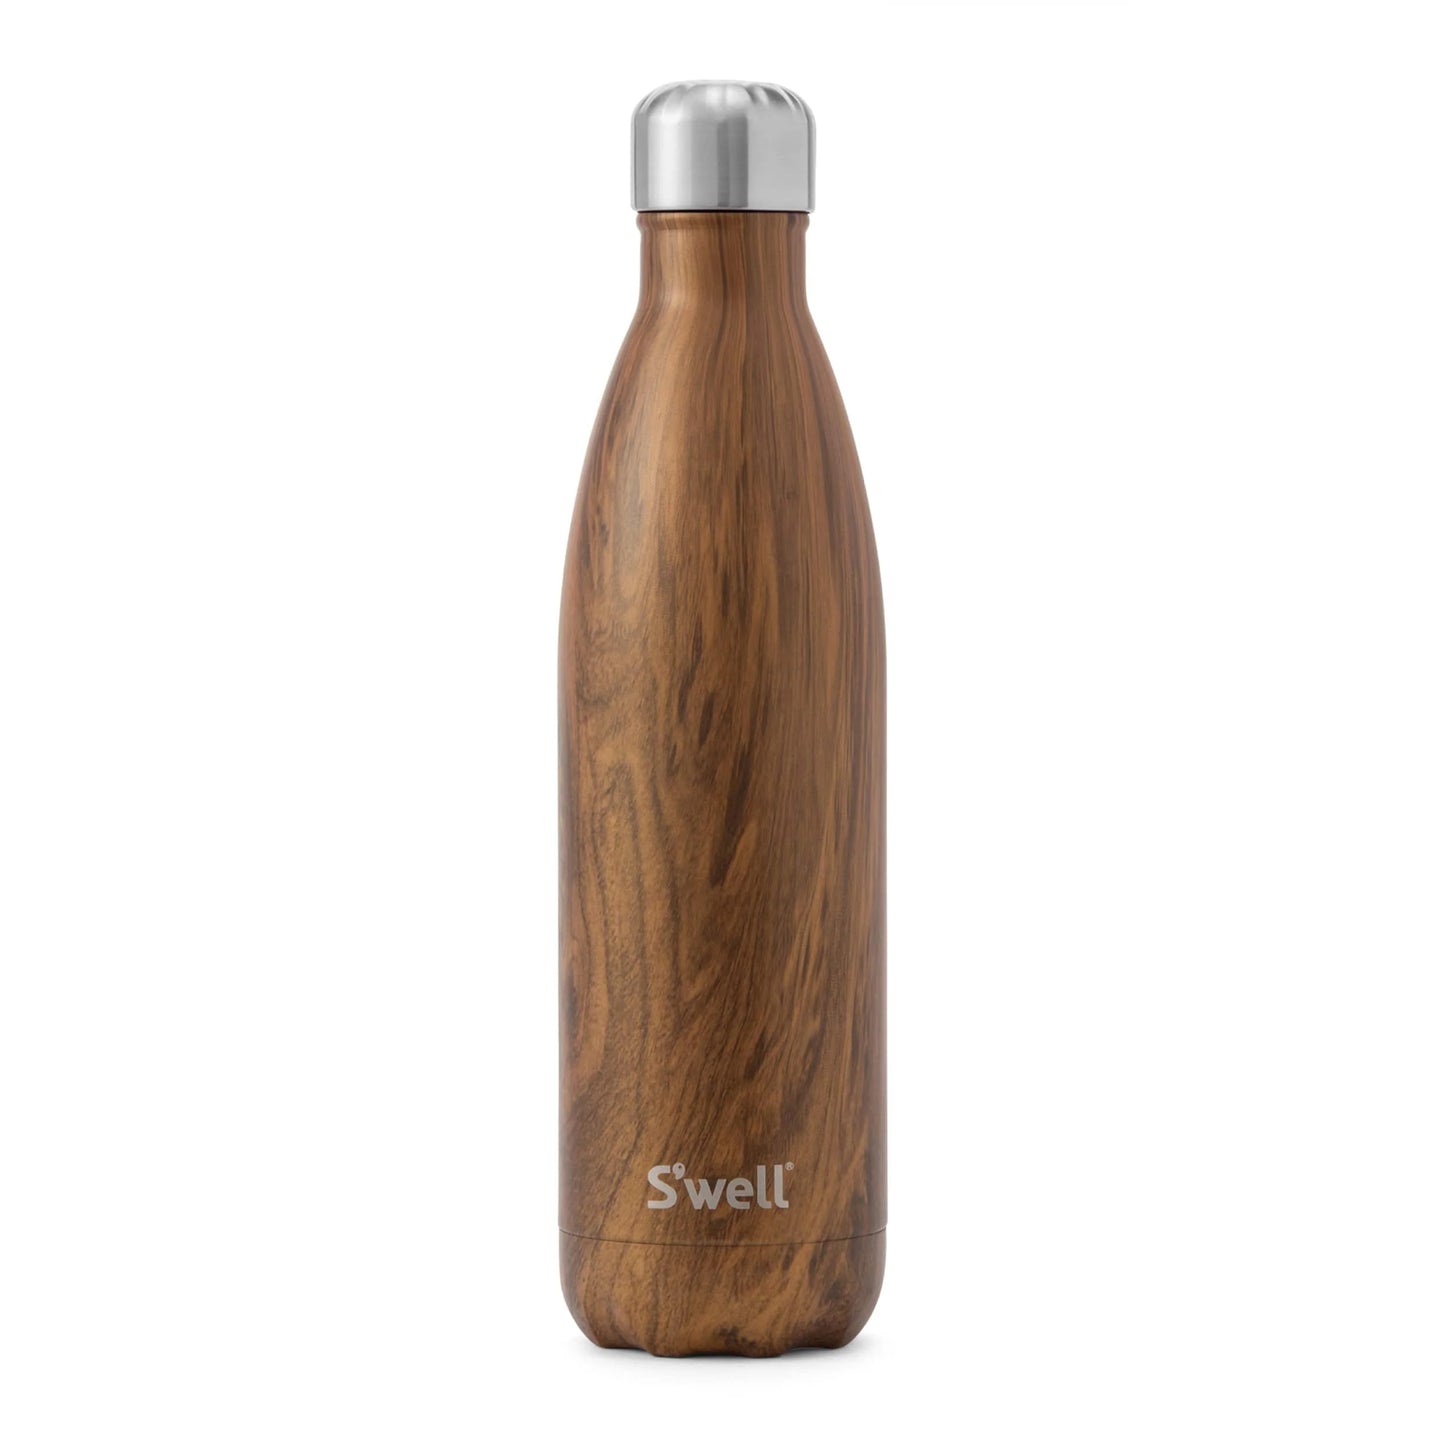 Swell orginal flaske i størrelsen 750ml. Denne flasken har det populære teakprintet utenpå.